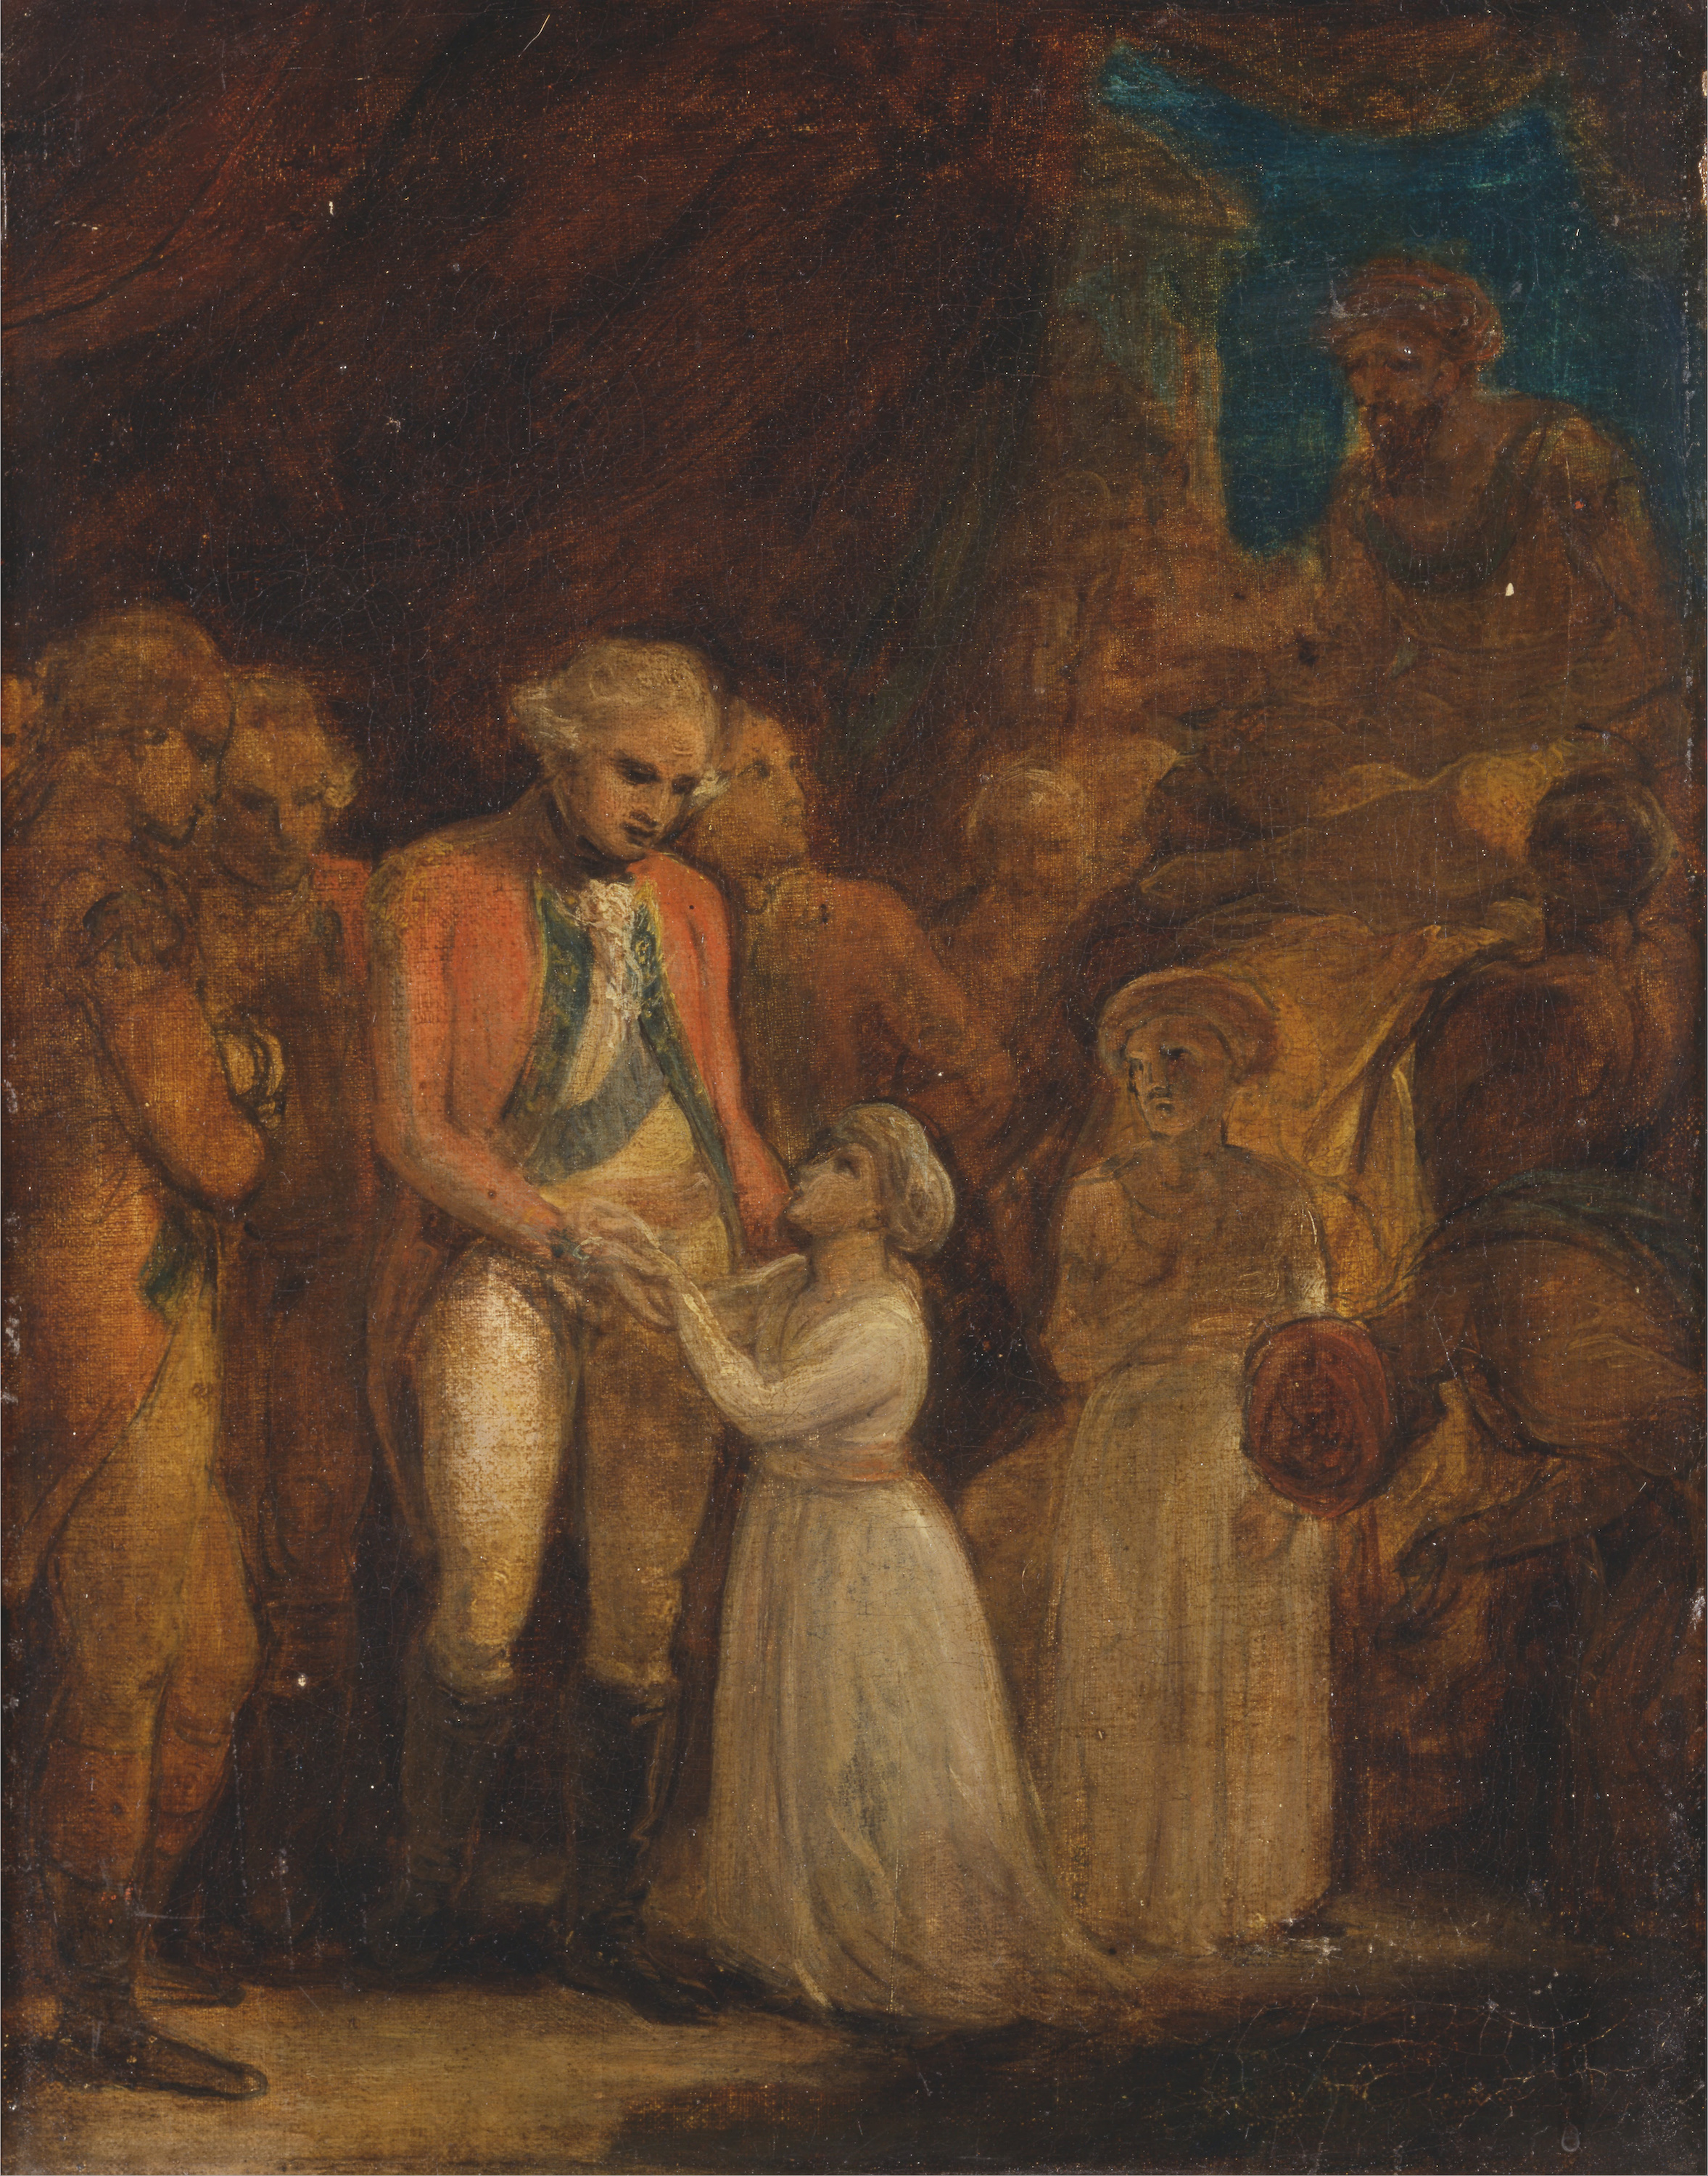 邁索爾蘇丹蒂普·賽西佈的兩個兒子被交給康沃利將軍作為人質 by Robert Smirke - 1792 - 451 x 356 cm 